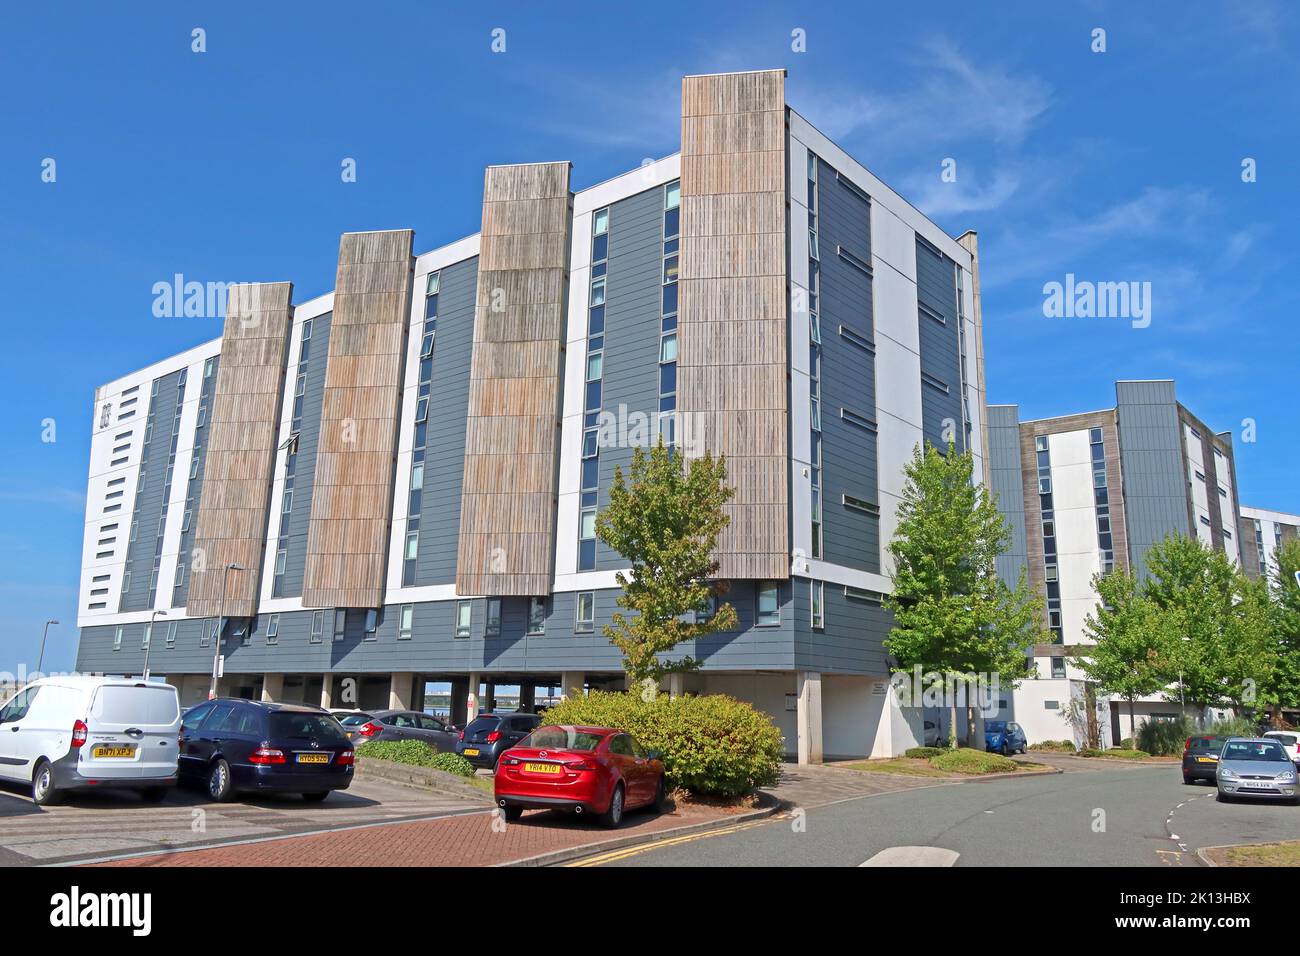 Les appartements Decks équipés de revêtement HPL, promenade , vieille ville de Runcorn, Halton, Cheshire, ANGLETERRE, ROYAUME-UNI, WA7 1GG Banque D'Images